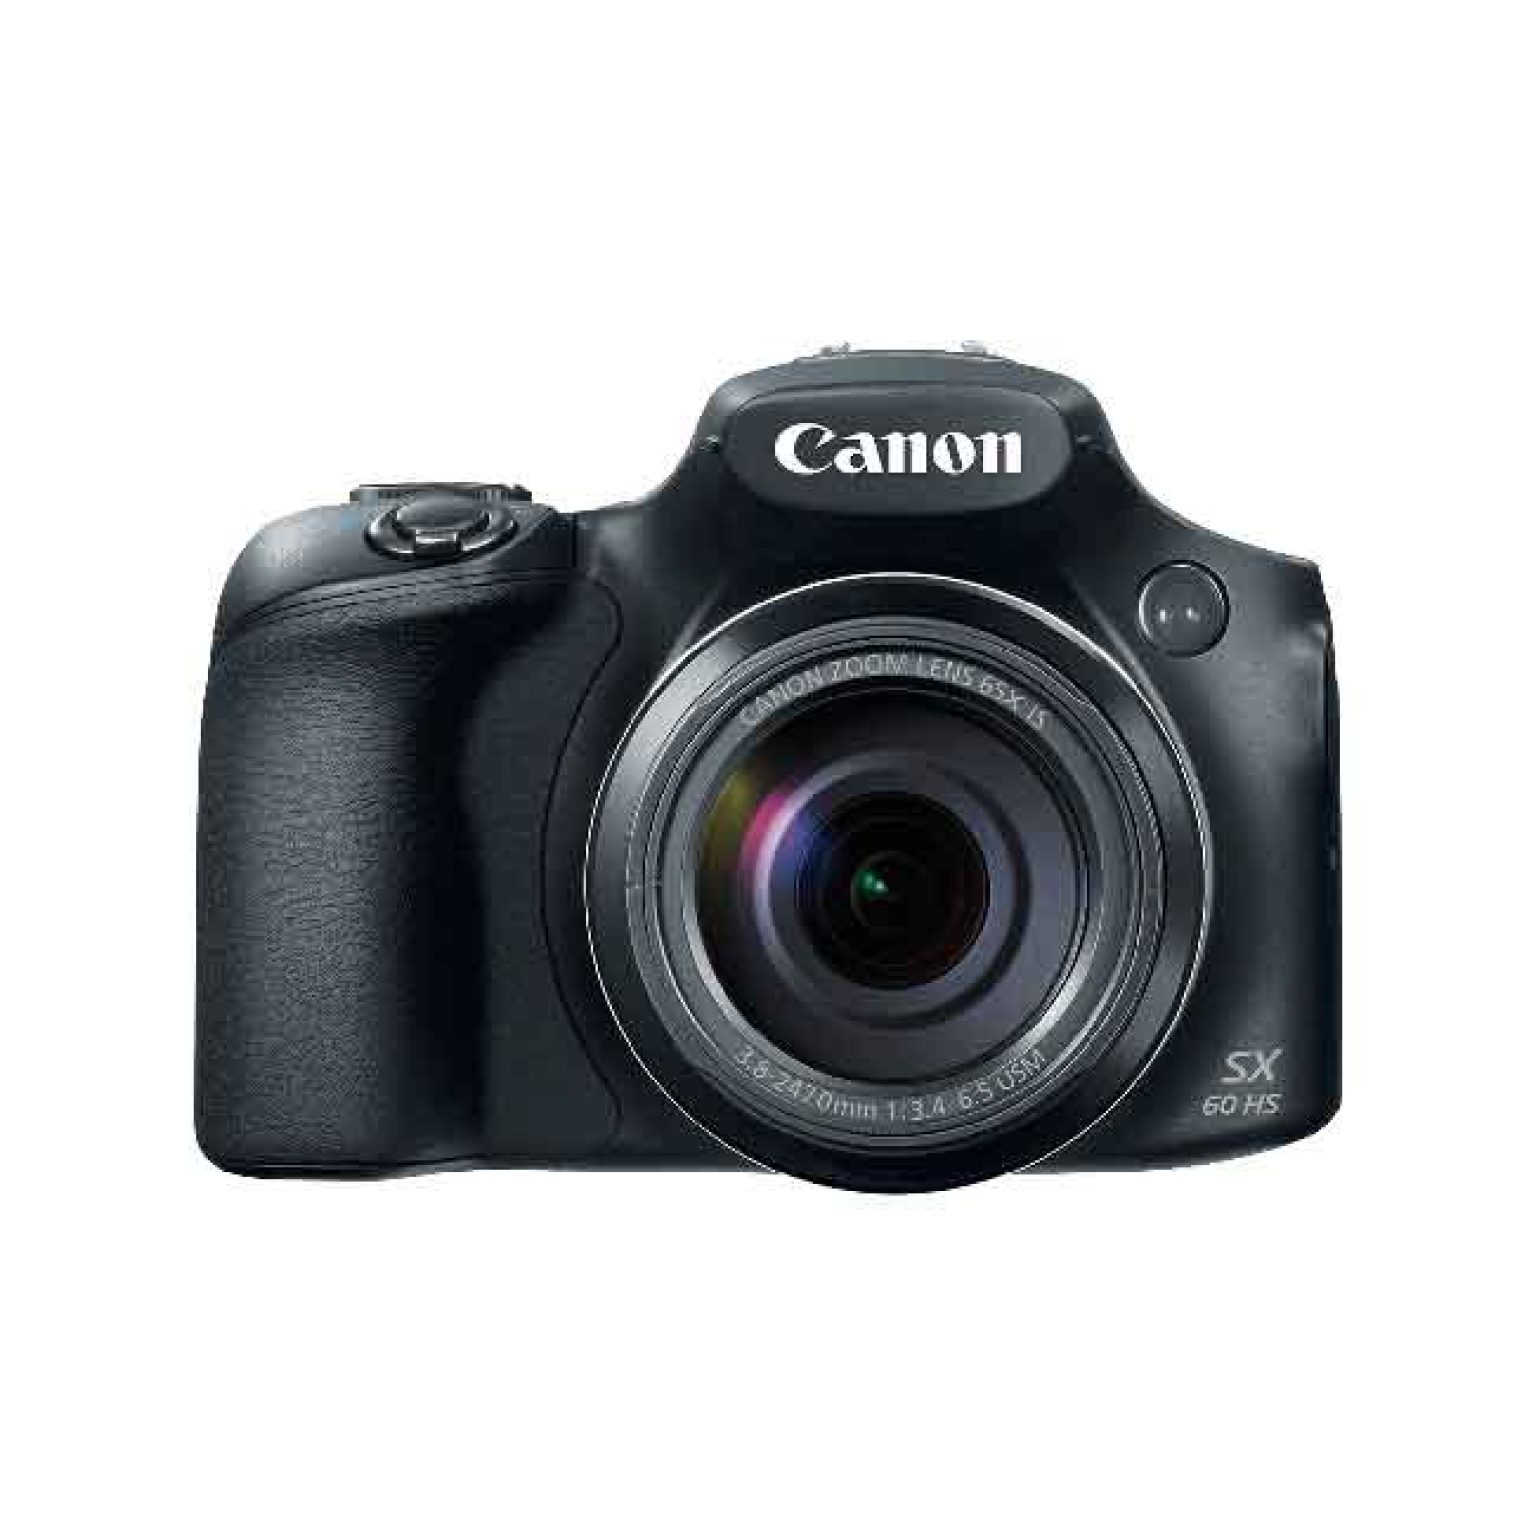 Canon PowerShot SX60 HS 1 1